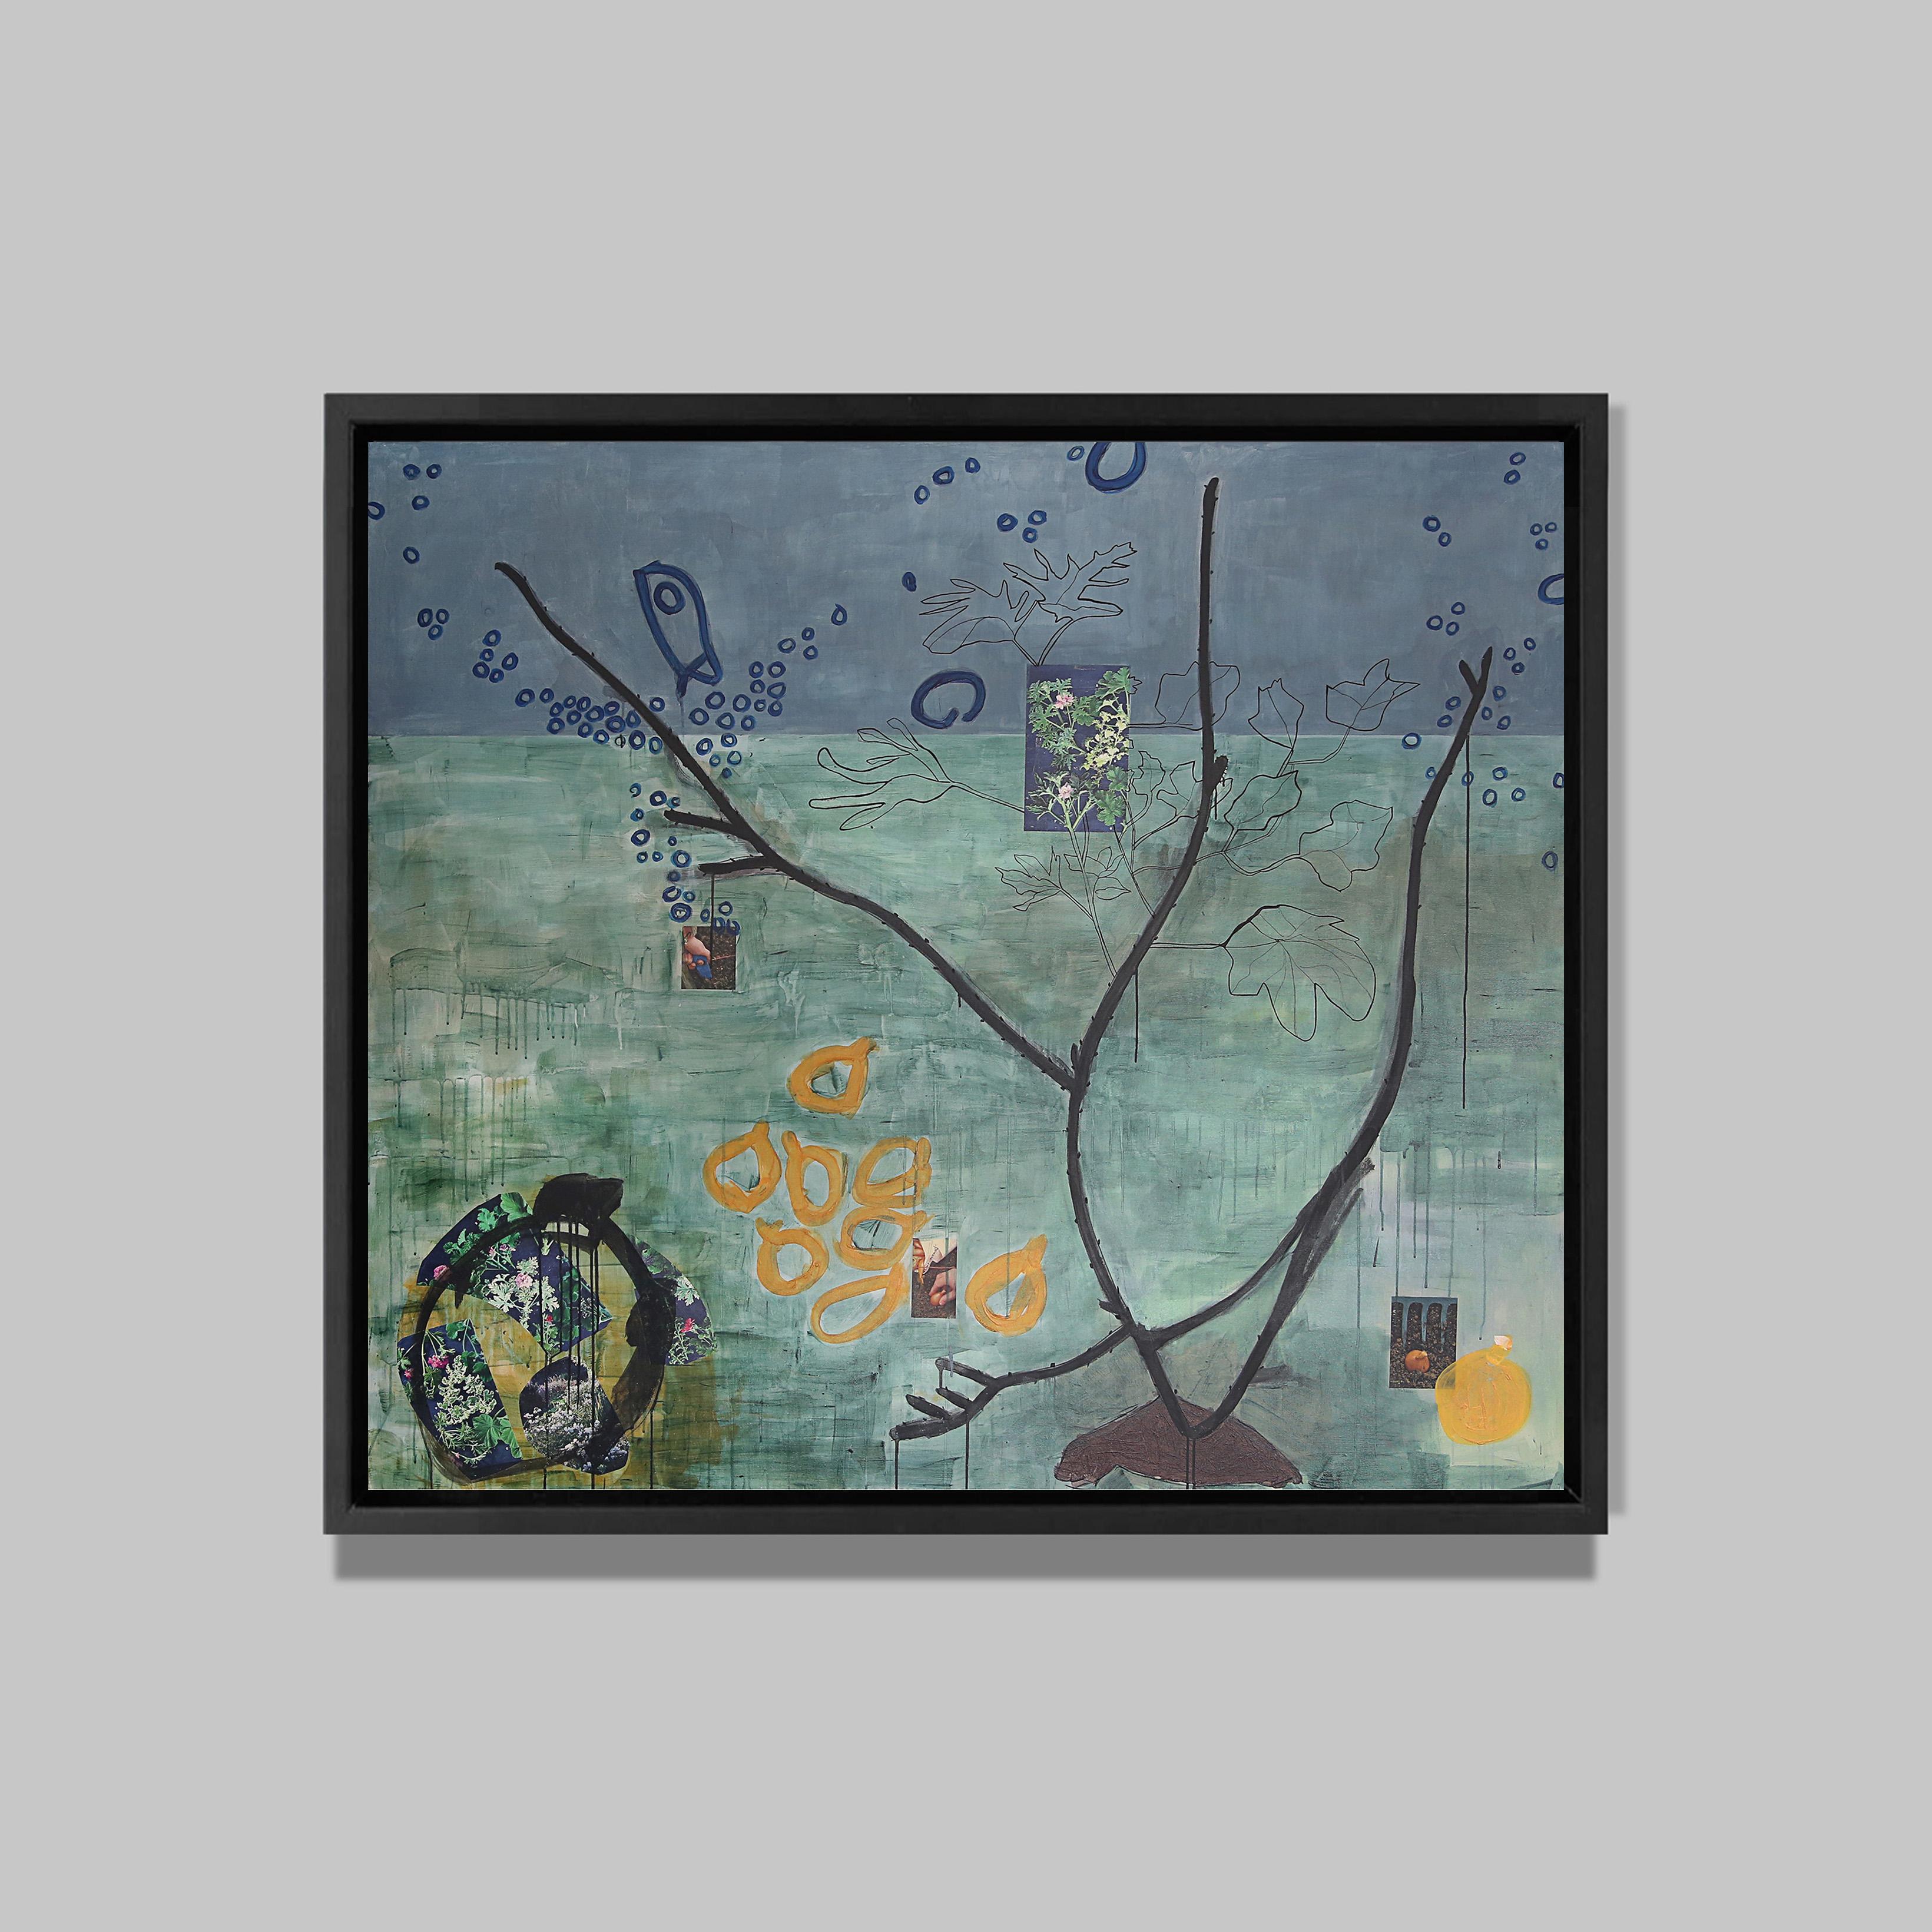 It's a wild world, 2015
Acrylique et collages sur toile
156 x 174 cm